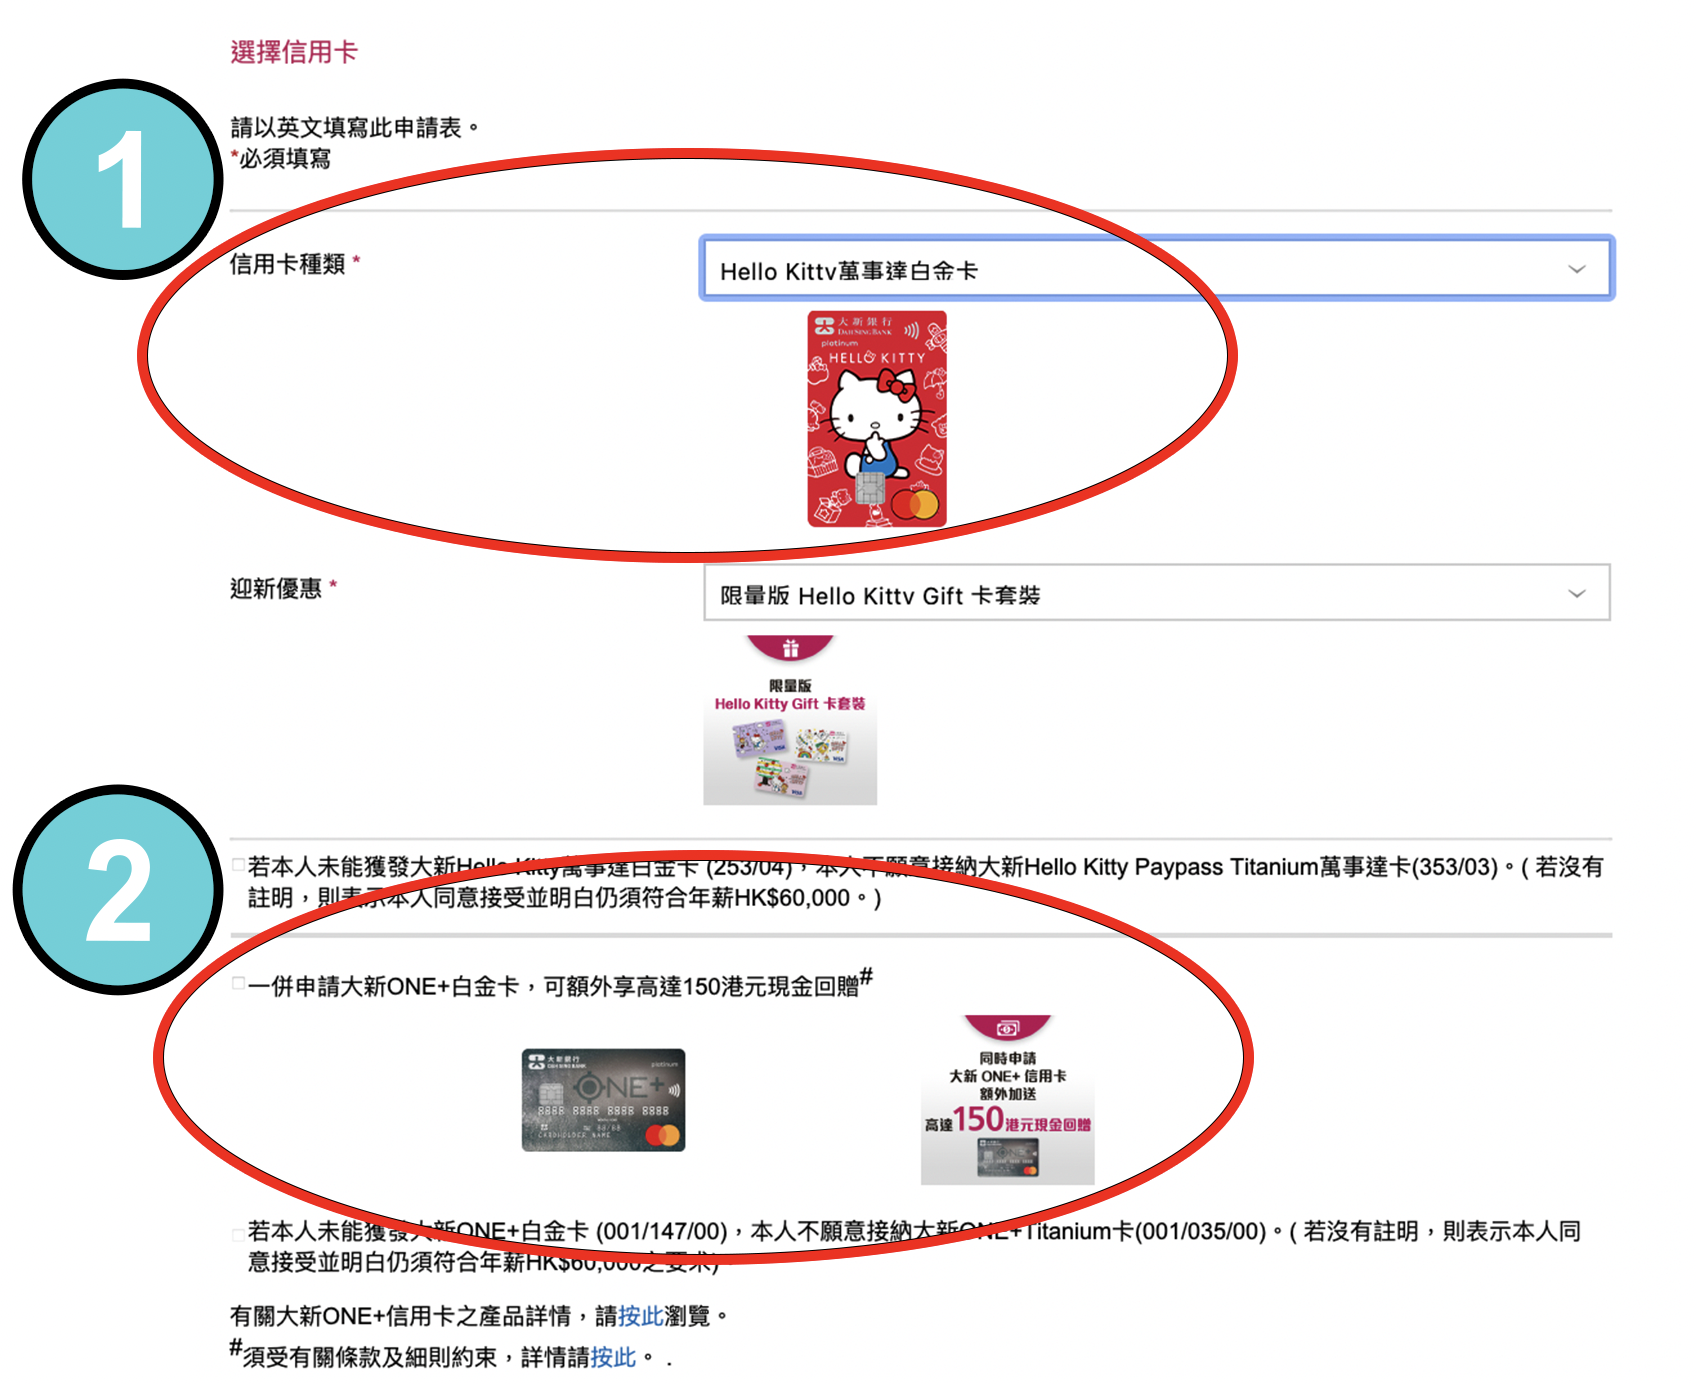 【大新Hello Kitty萬事達白金卡雙卡優惠】經里先生申請Hello Kitty卡及ONE+卡送HK$500超市禮券！每簽HK$1即享1積分獎賞！用信用卡八達通自動增值都有積分獎賞！